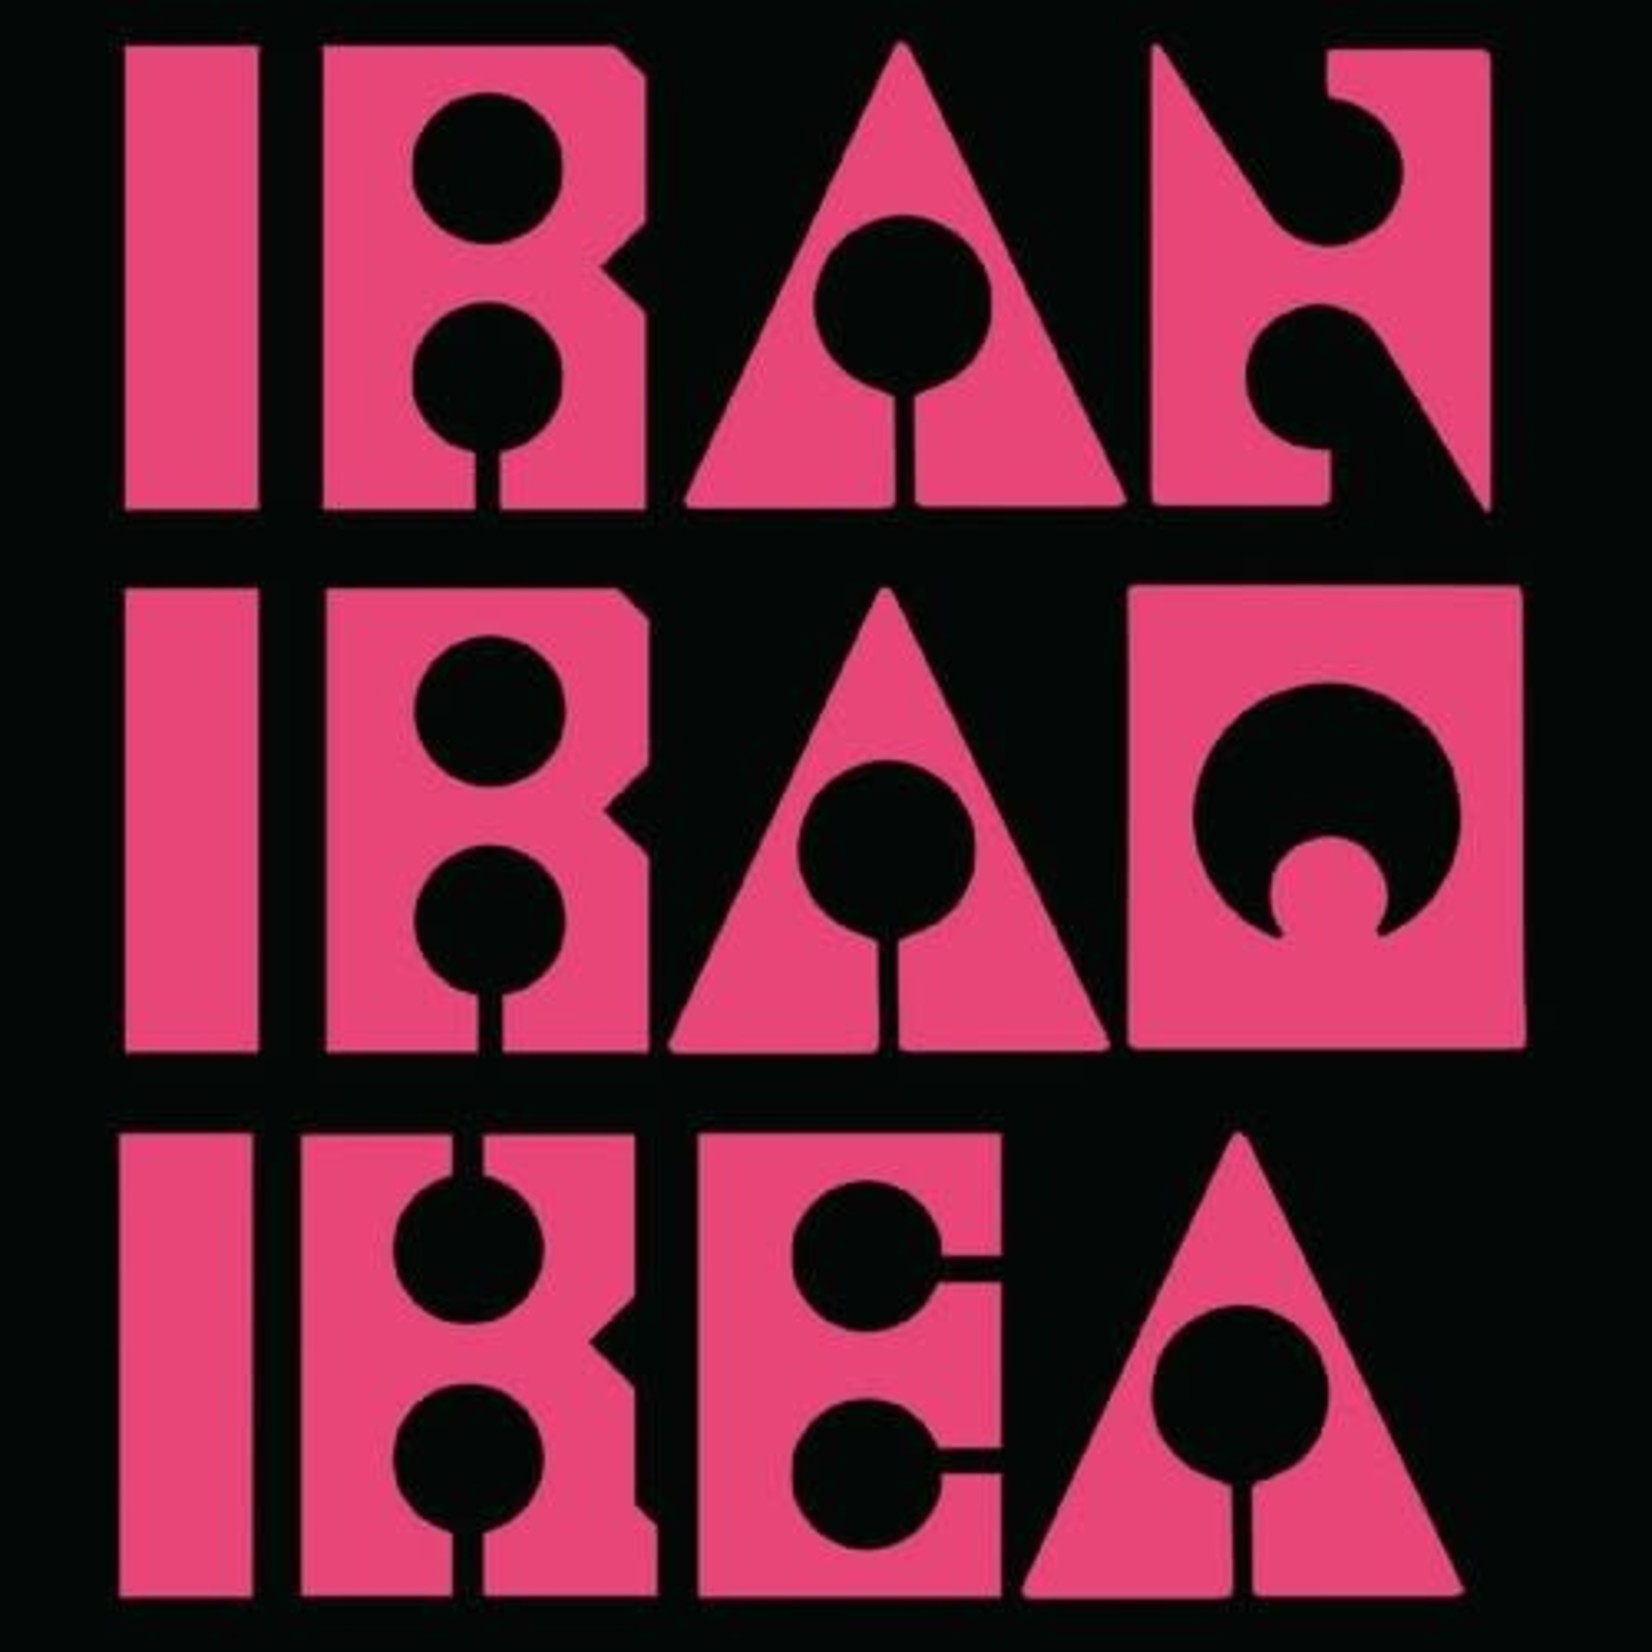 PNKSLM Les Big Byrd - Iran Iraq Ikea (LP) [Pink]